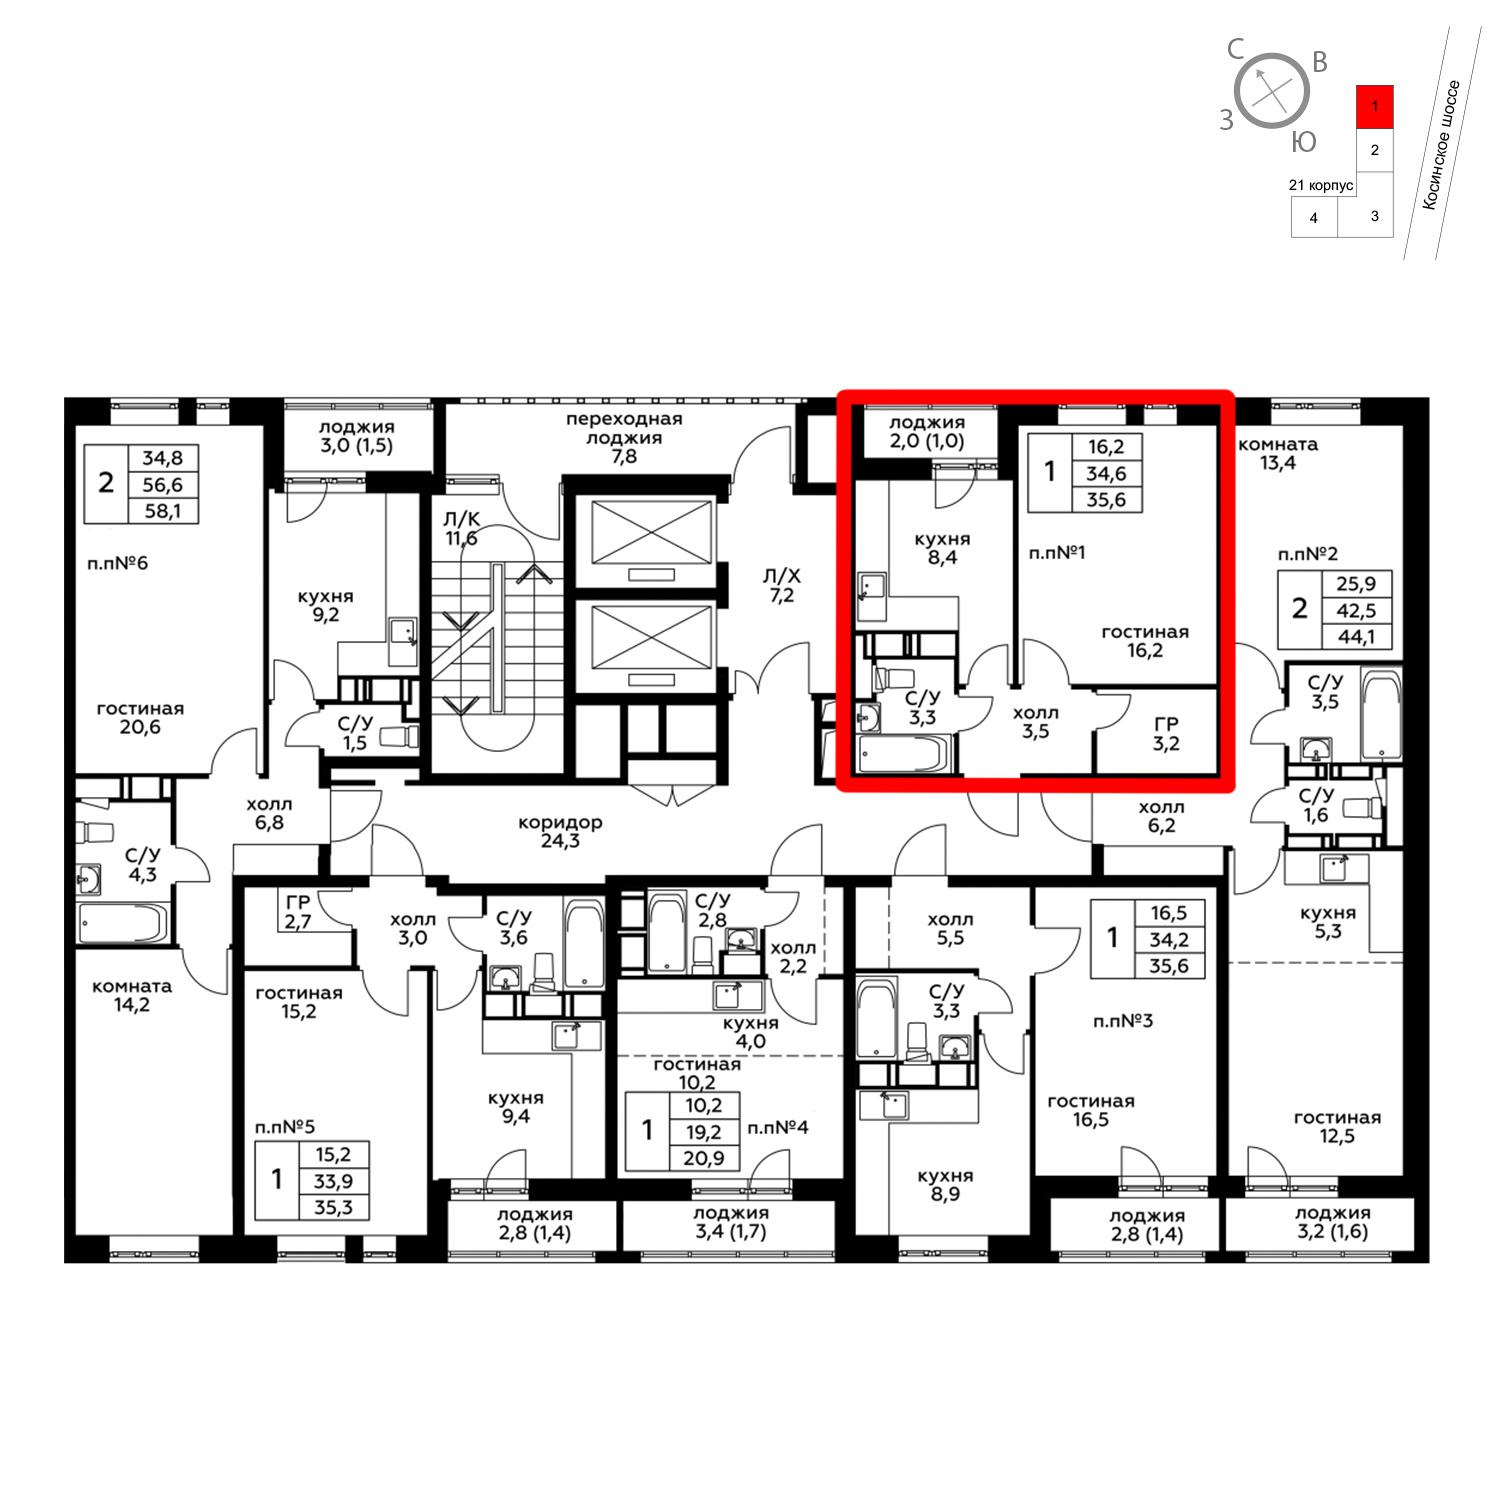 Продаётся 1-комнатная квартира в новостройке 35.6 кв.м. этаж 7/20 за 4 567 480 руб 